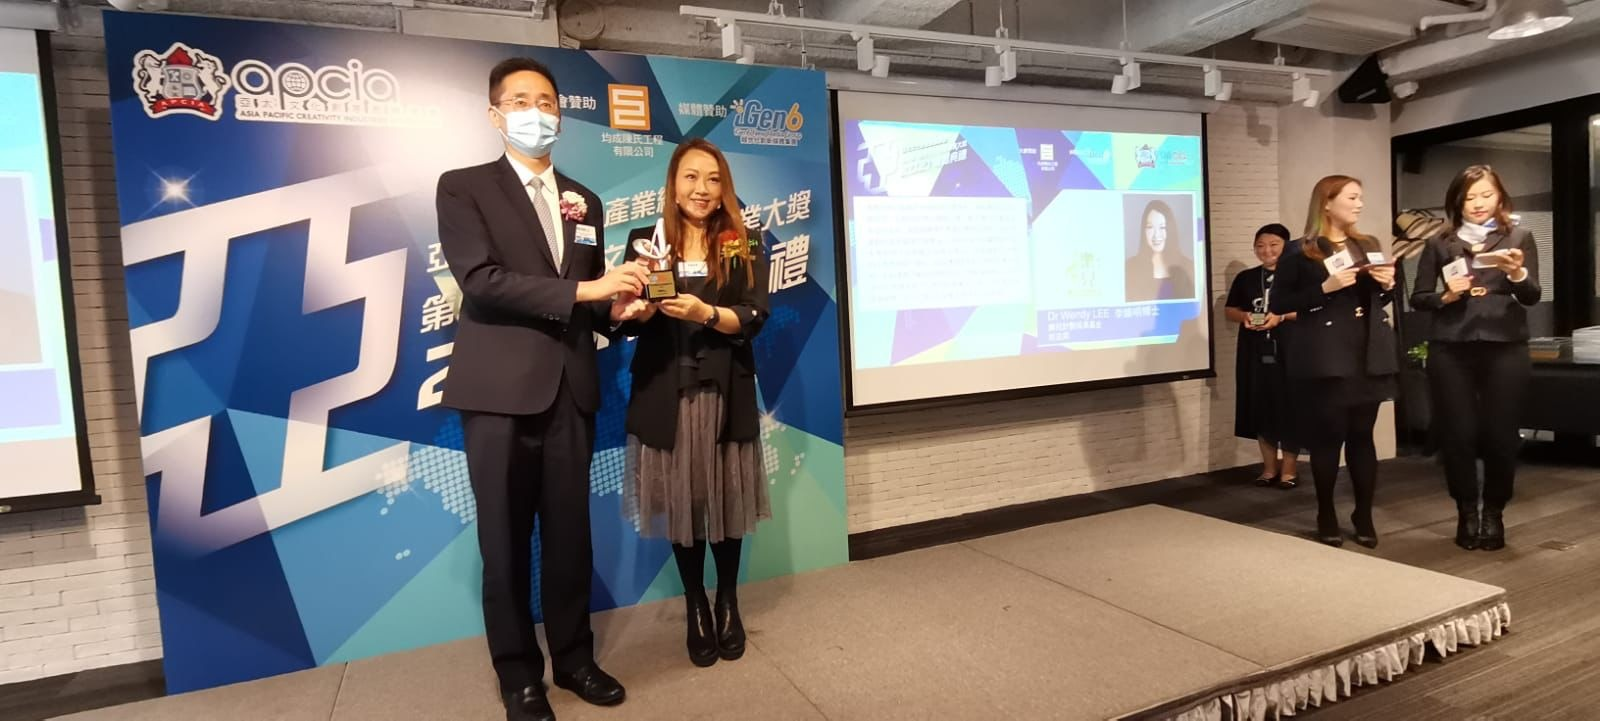 祝賀本會常務會長李煥明博士（Wendy）榮獲由「第五屆香港文化創意產業大獎」